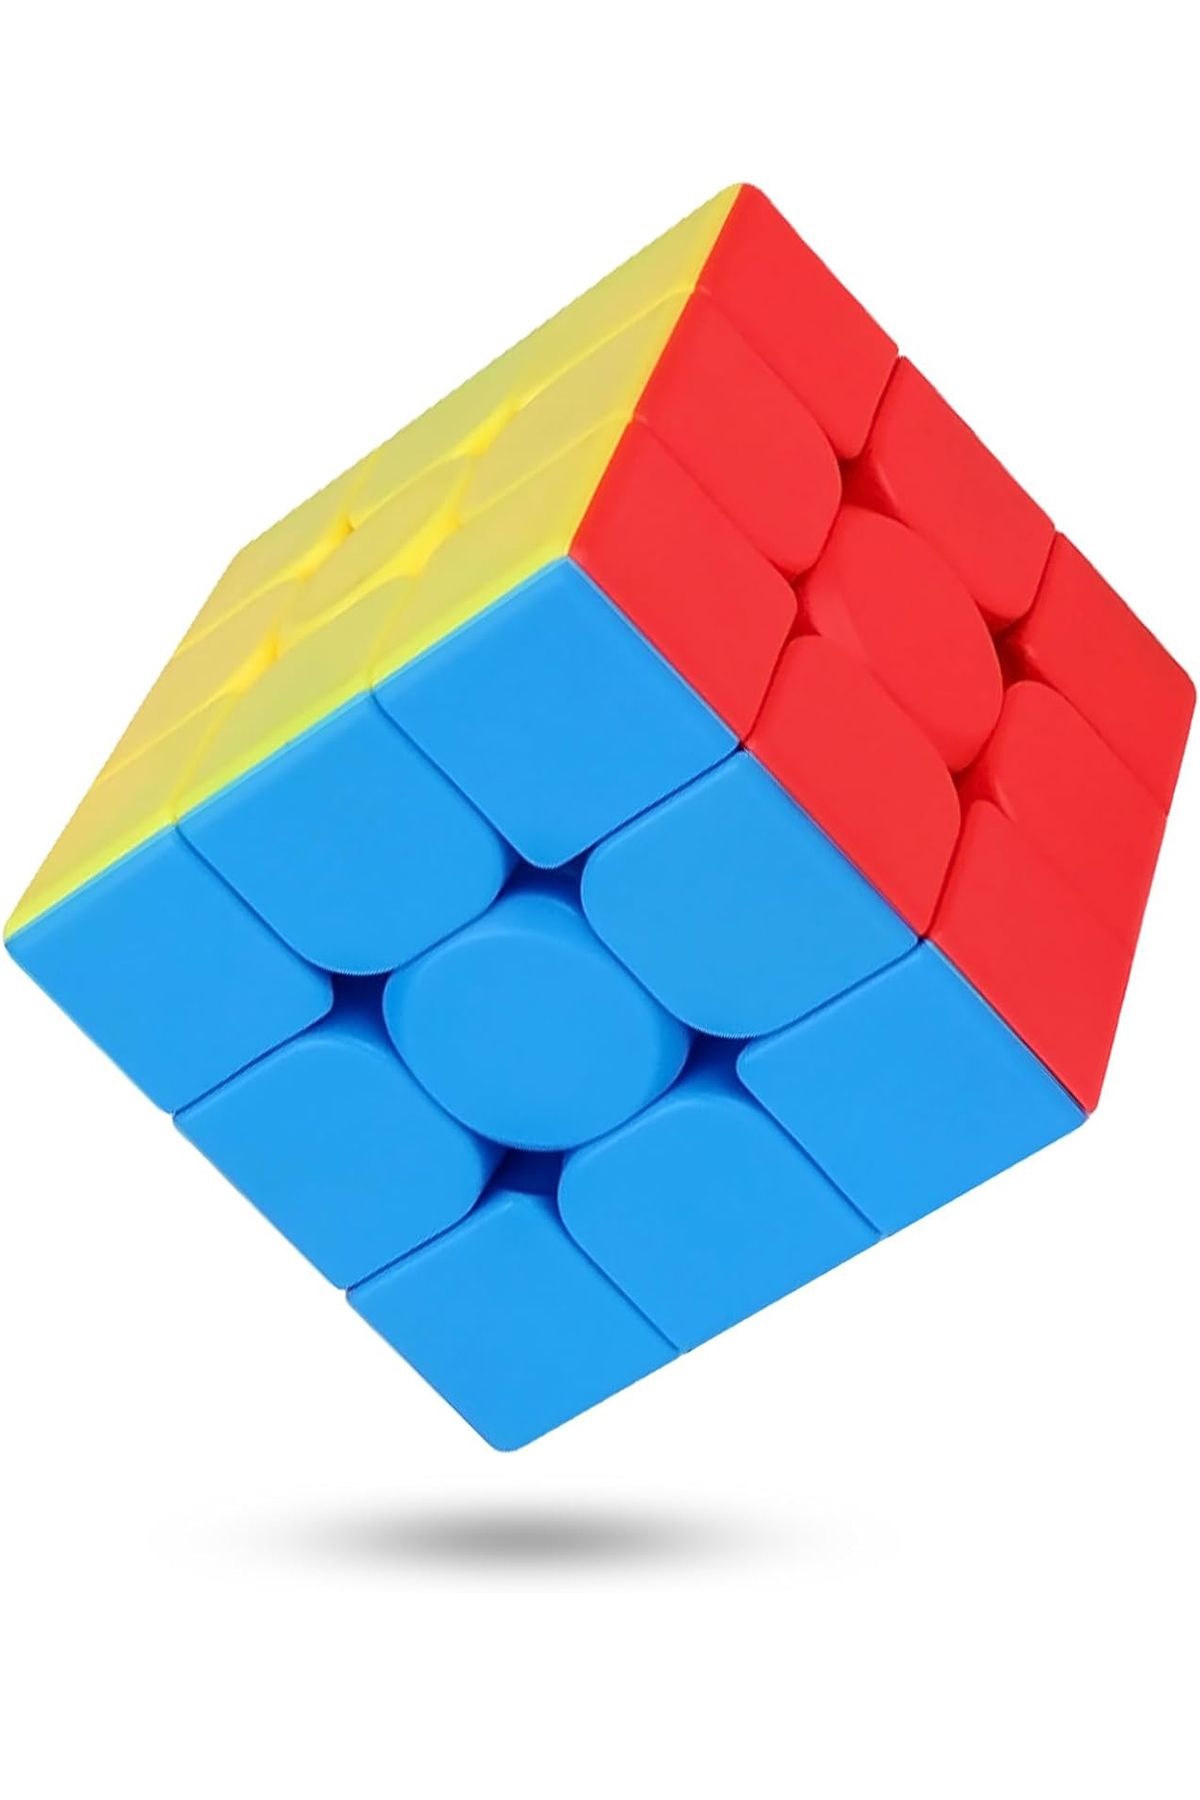 Toyaş Speed Cupe Rubik Küp Zeka Küpü 3x3 Canlı Renkler Hız Küpü,Fidget Oyuncak Seyahat Zeka Oyunu